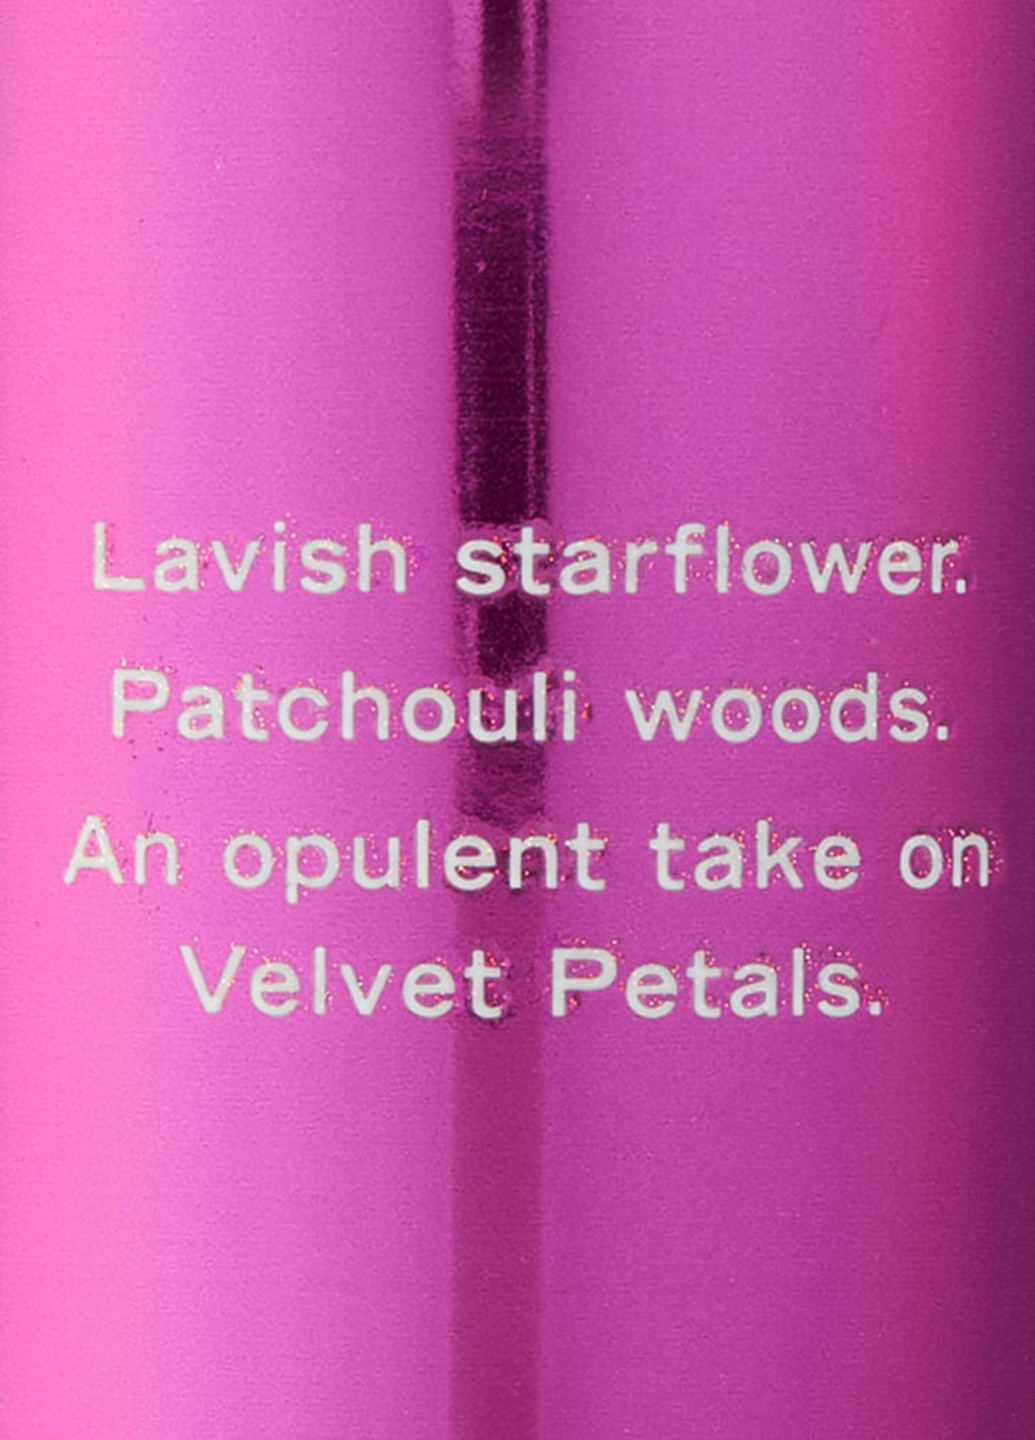 Набор Velvet Petals Luxe (2 пр.) Victoria's Secret